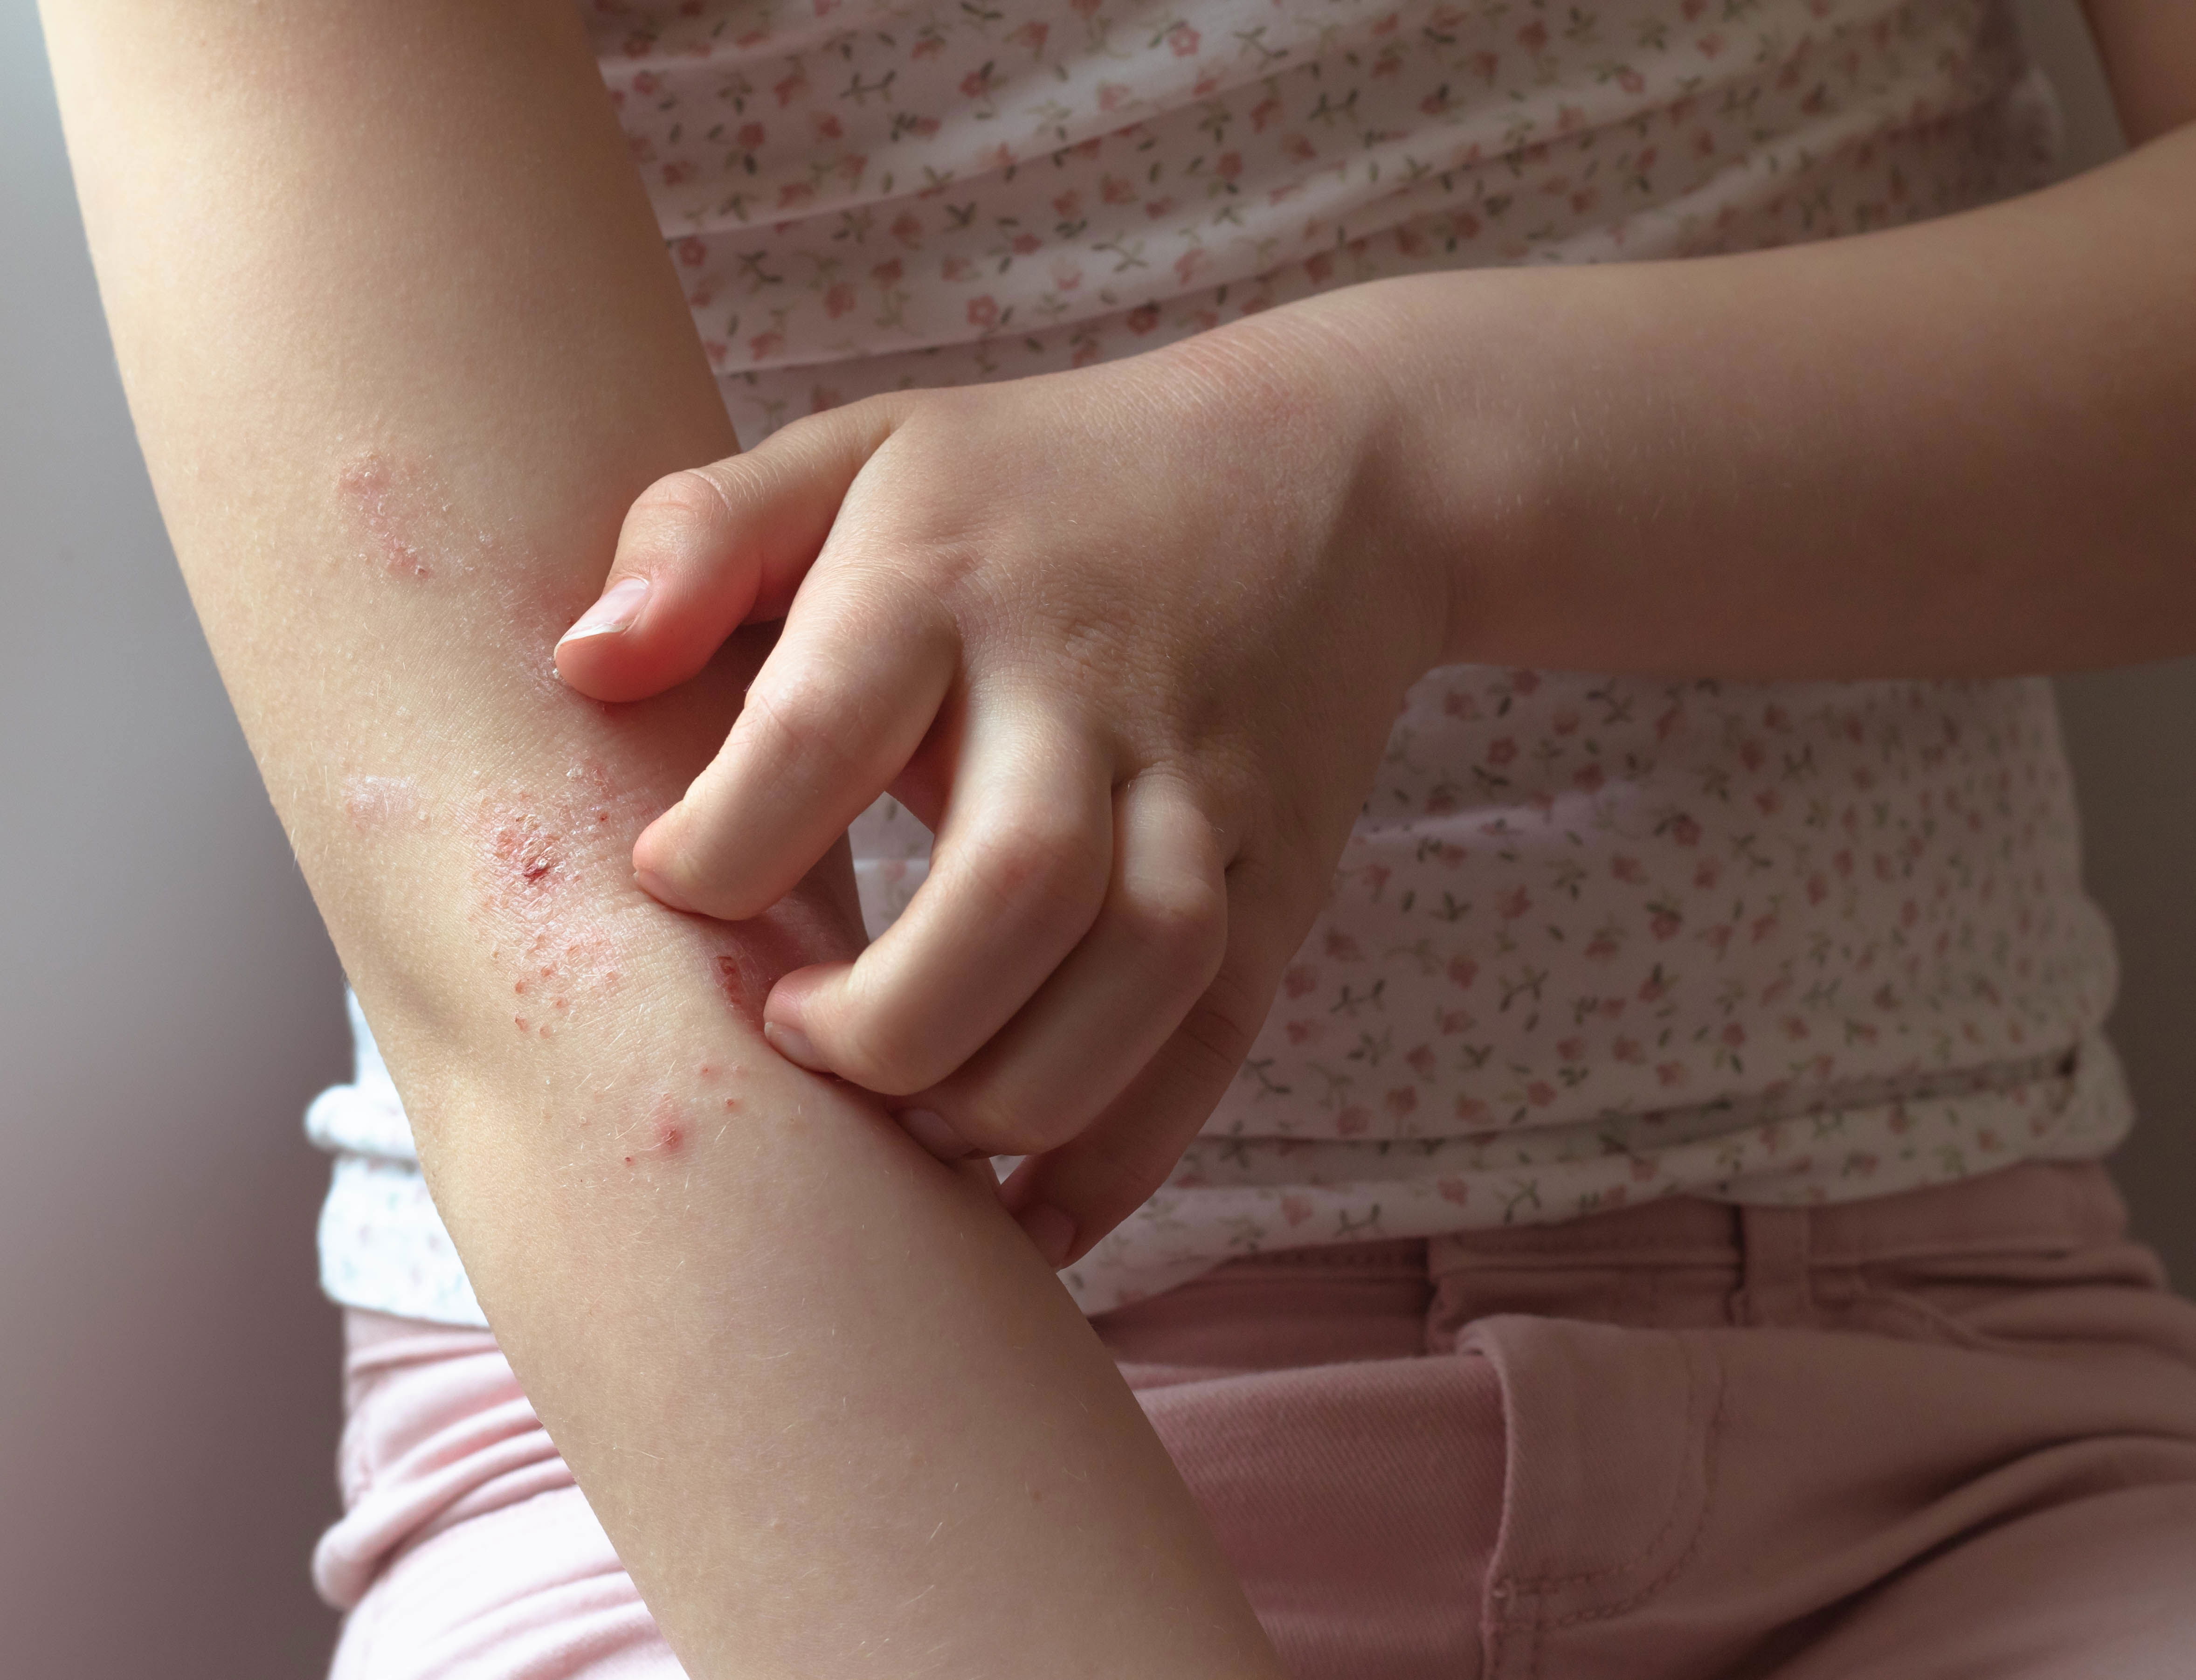 Foto eines jungen Mädchens, welches sich an den Armen kratzt, die deutlich von Hautverdickungen, Ekzemen und Rötungen gezeichnet sind